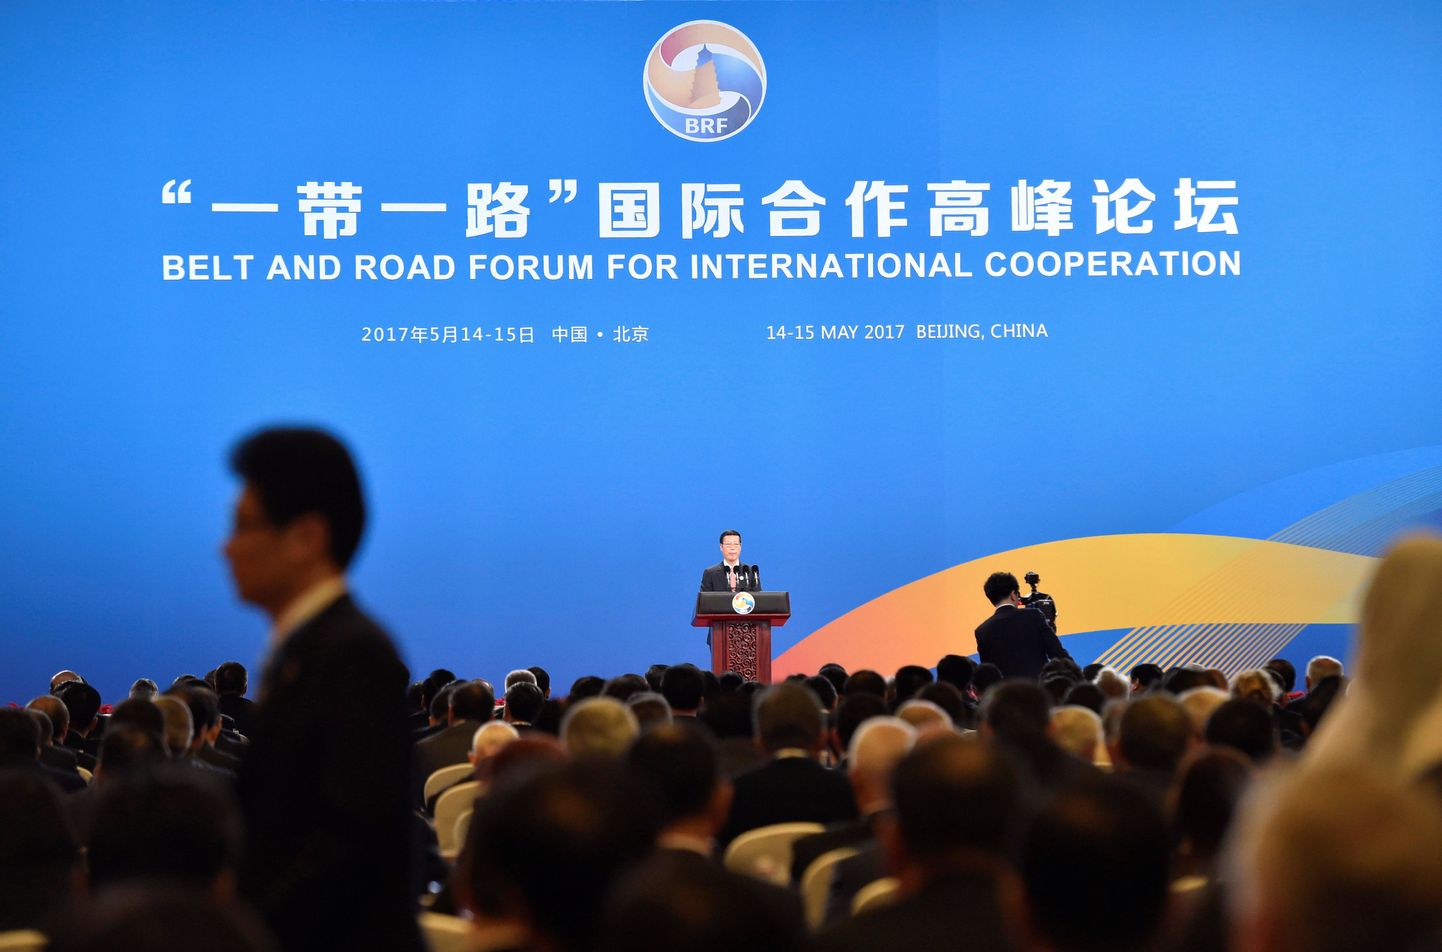 Hiina asepeaminister Zhang Gaoli Siiditee kohtumisel kõnet pidamas.